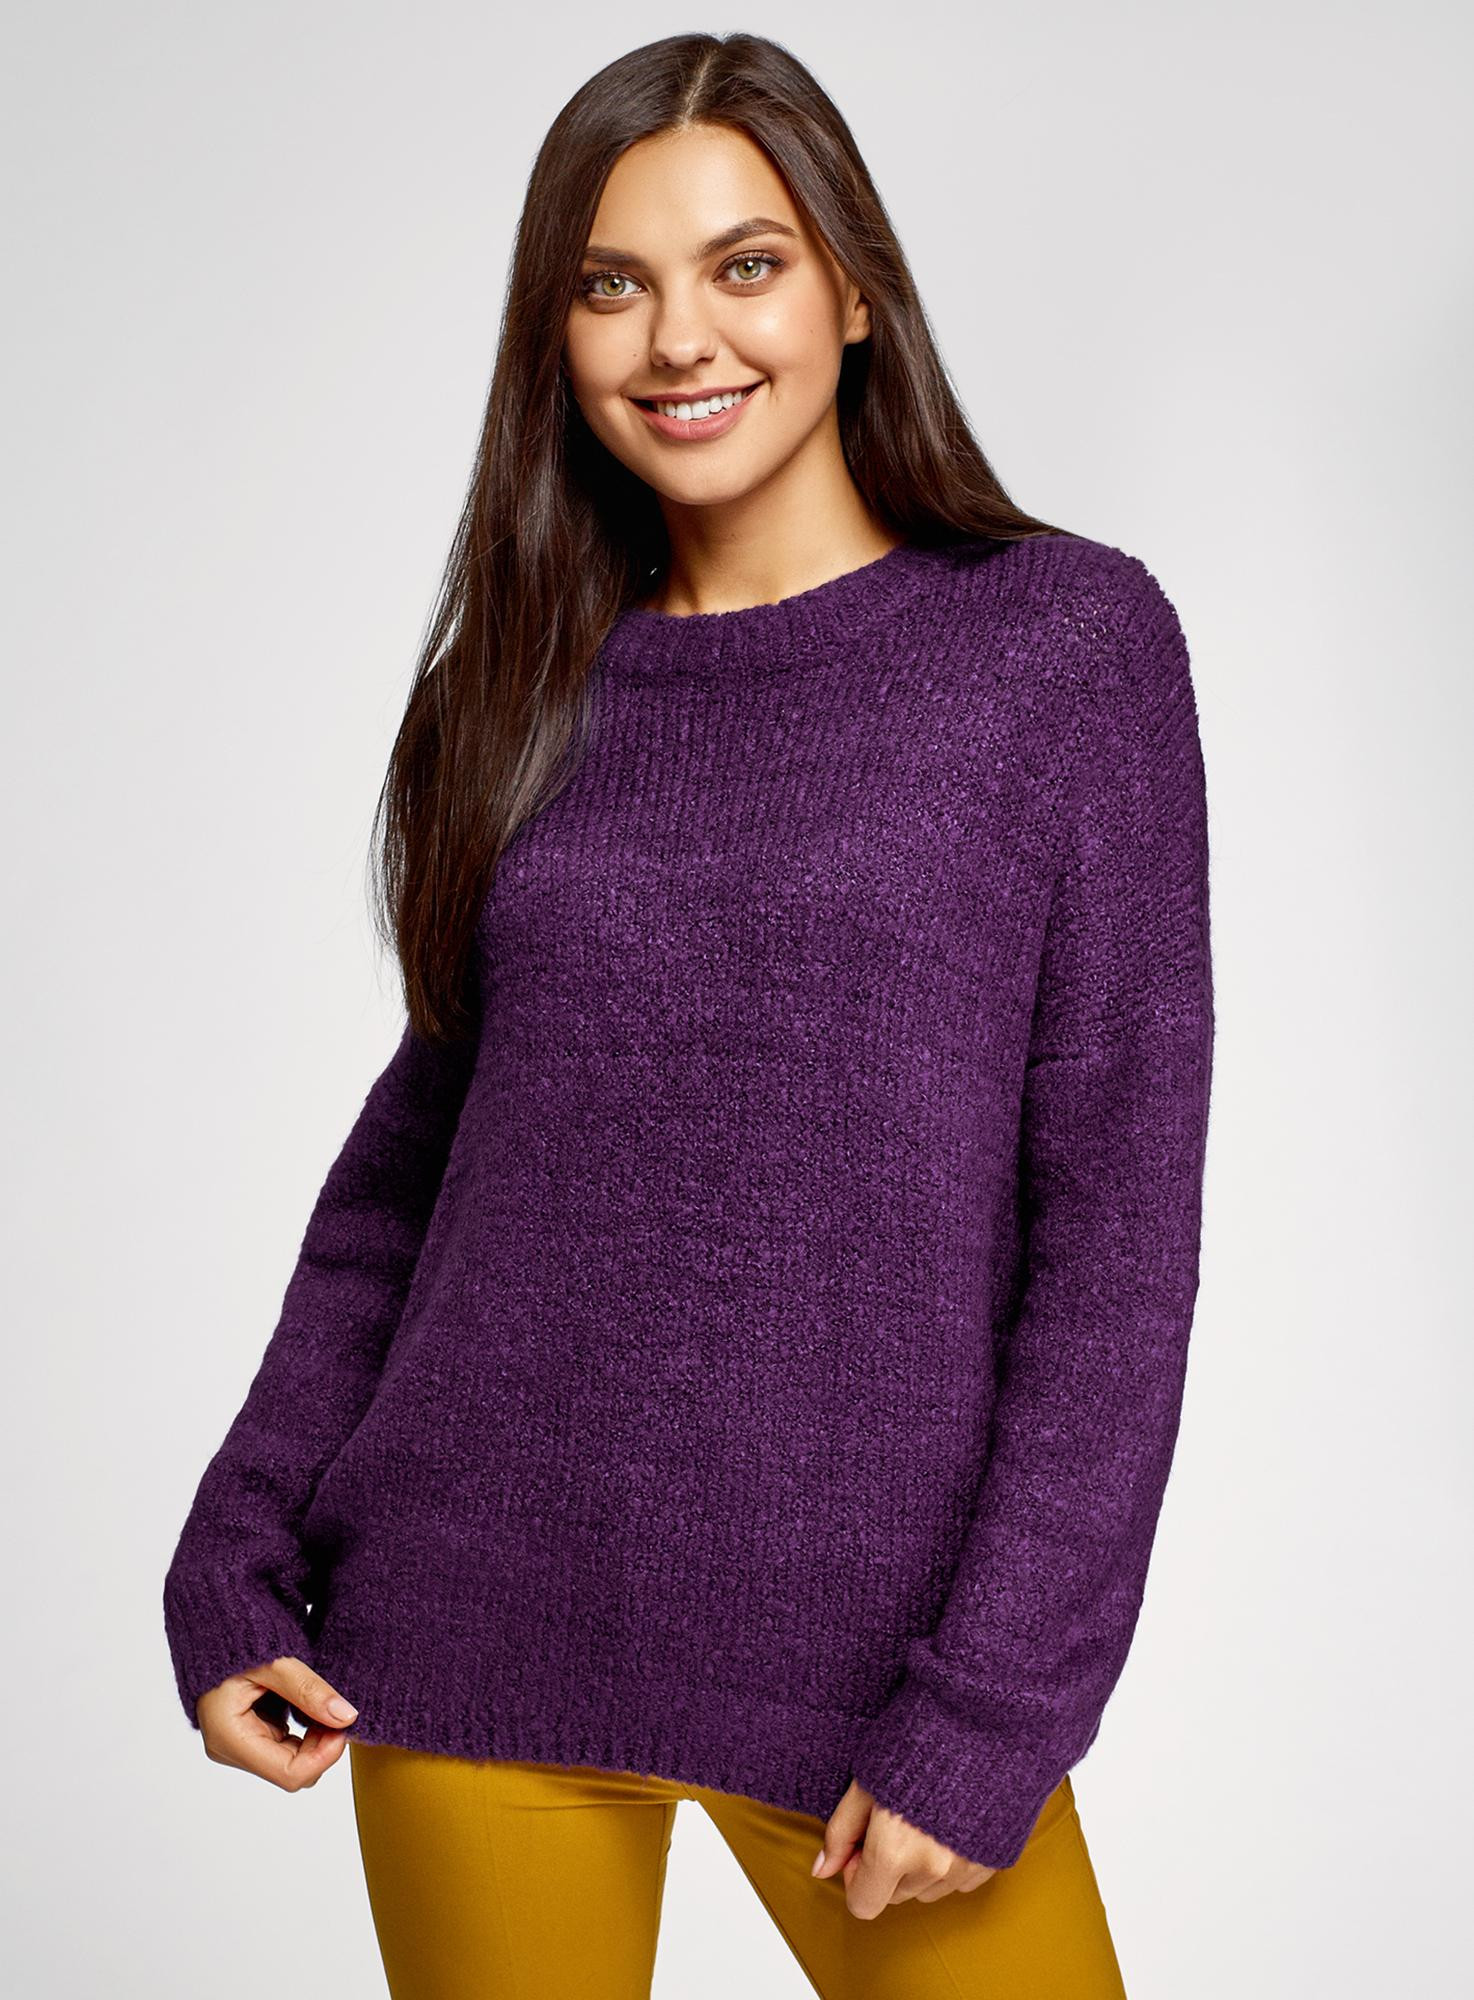 Женские свитера джемперы. Оджи джемпер женский фиолетовый. Свитер женский. Фиолетовый свитер. Фиолетовый свитер женский.